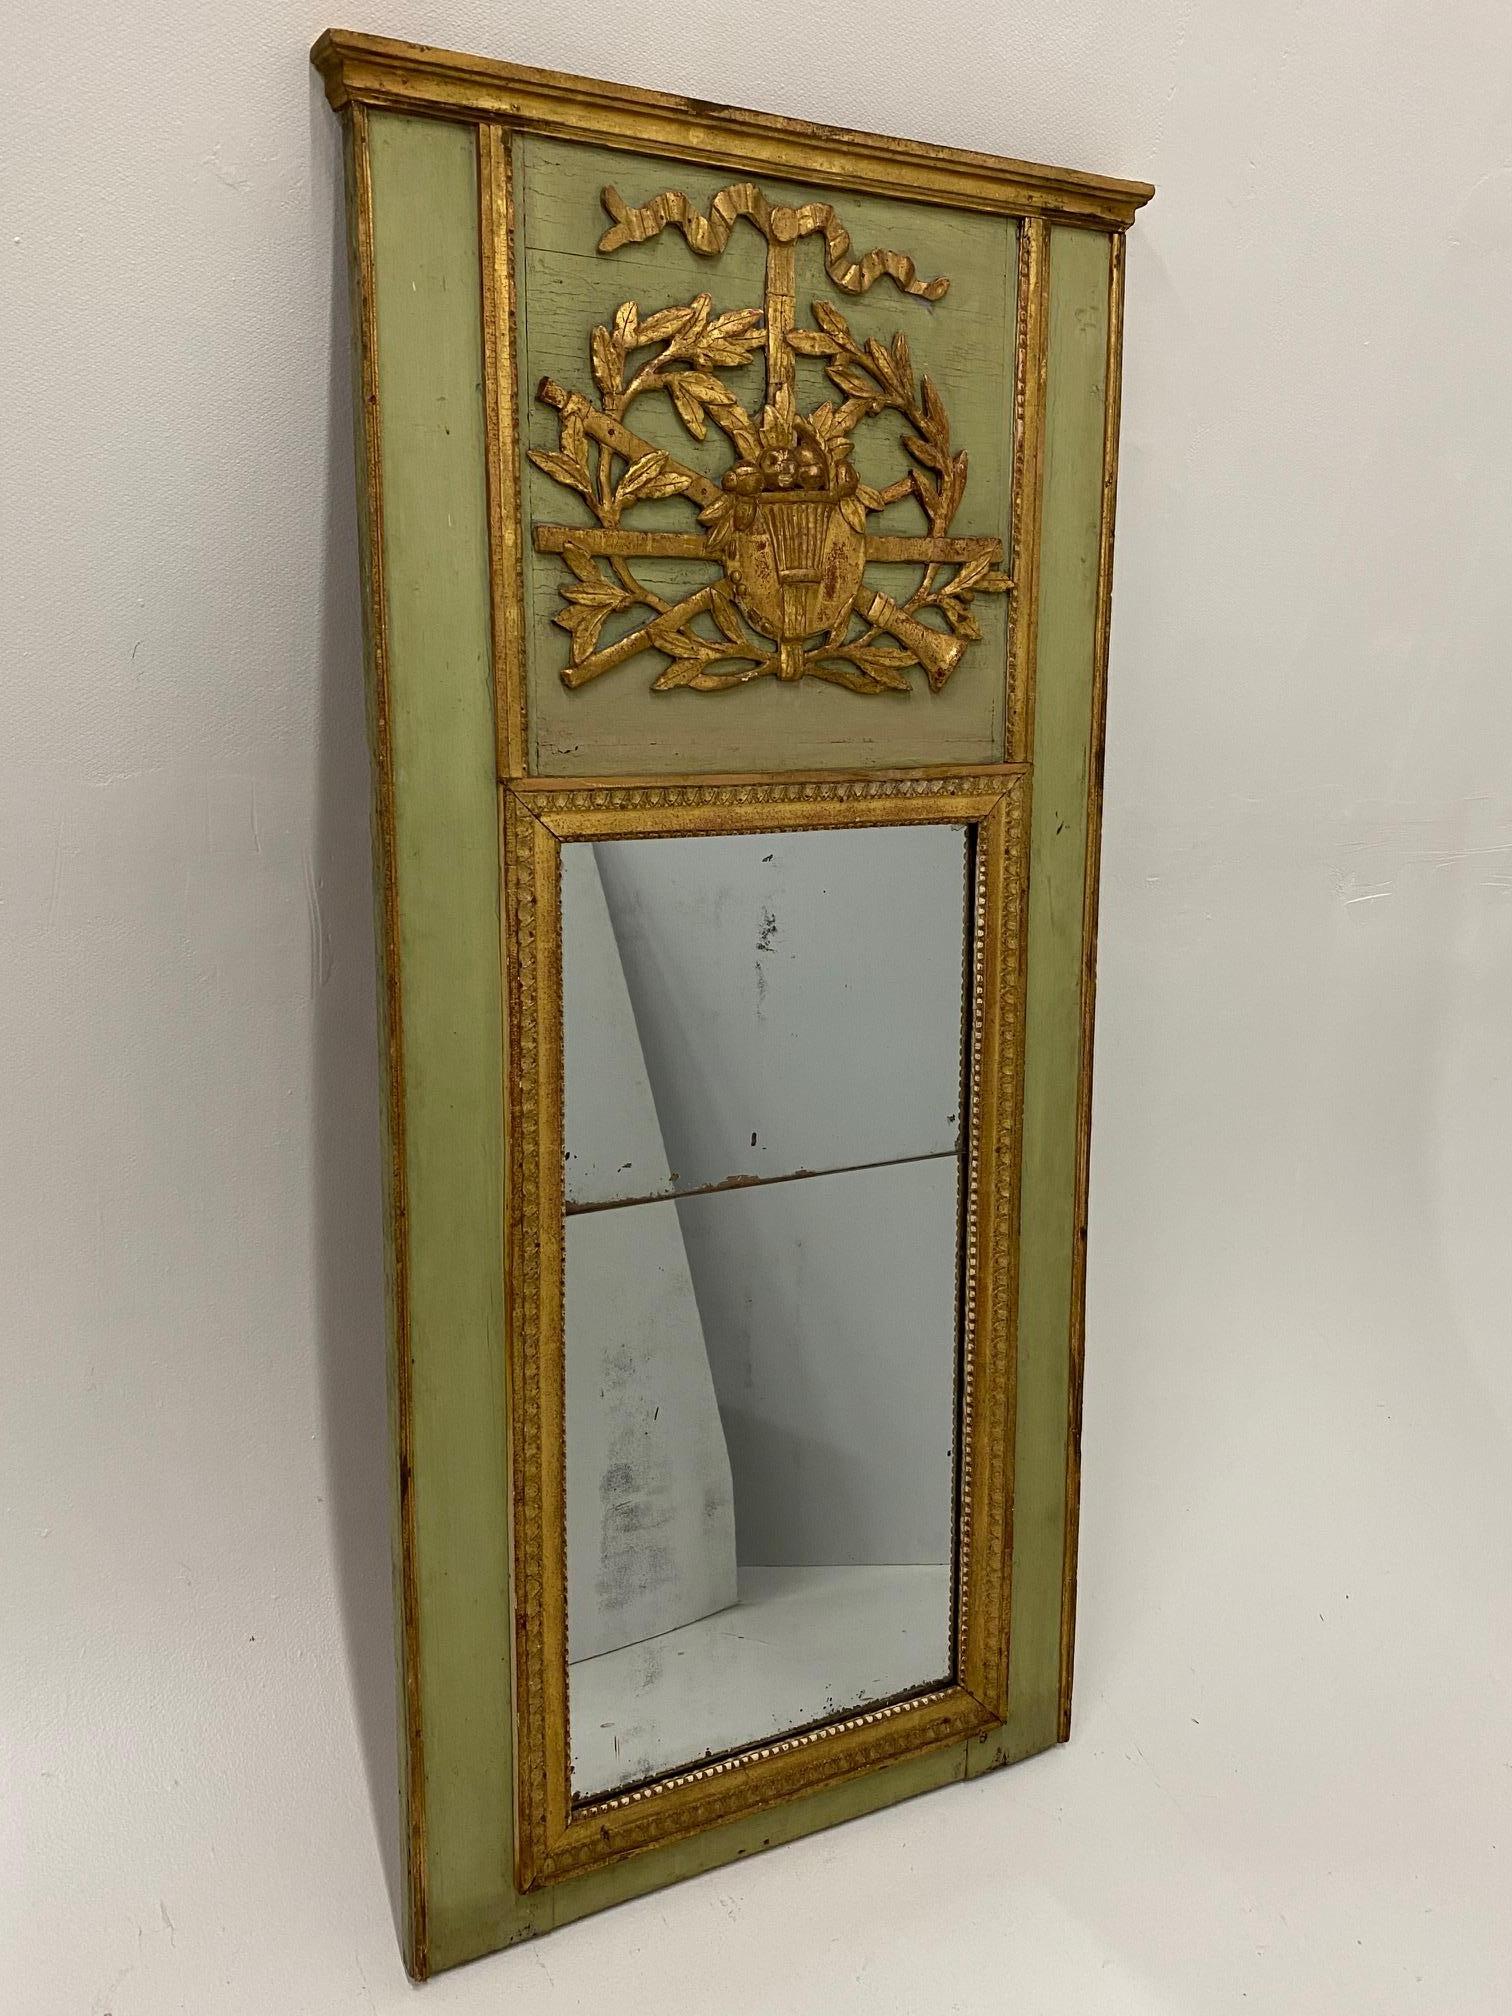 Ein schöner vertikaler Spiegel aus vergoldetem Holz aus dem 18. Jahrhundert mit einem wunderschönen, sanft grün bemalten Rahmen mit vergoldeten, musikalischen Verzierungen. Original-Spiegel in sehr gutem Zustand, hat die Classic zwei Stücke mit